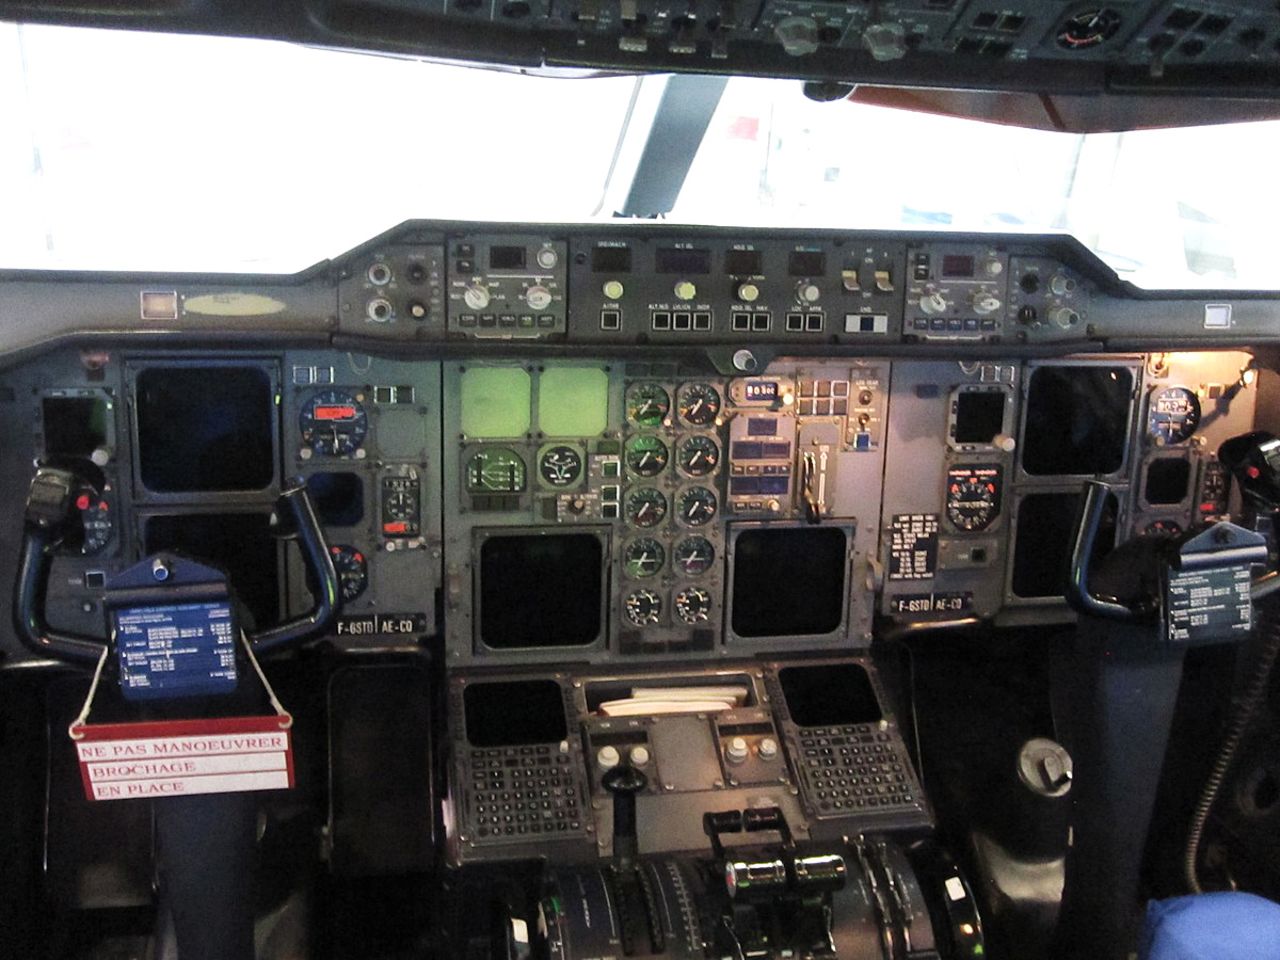 Una tripulación de tres opera el Súper Transportador A300-600: dos pilotos y un jefe de carga.